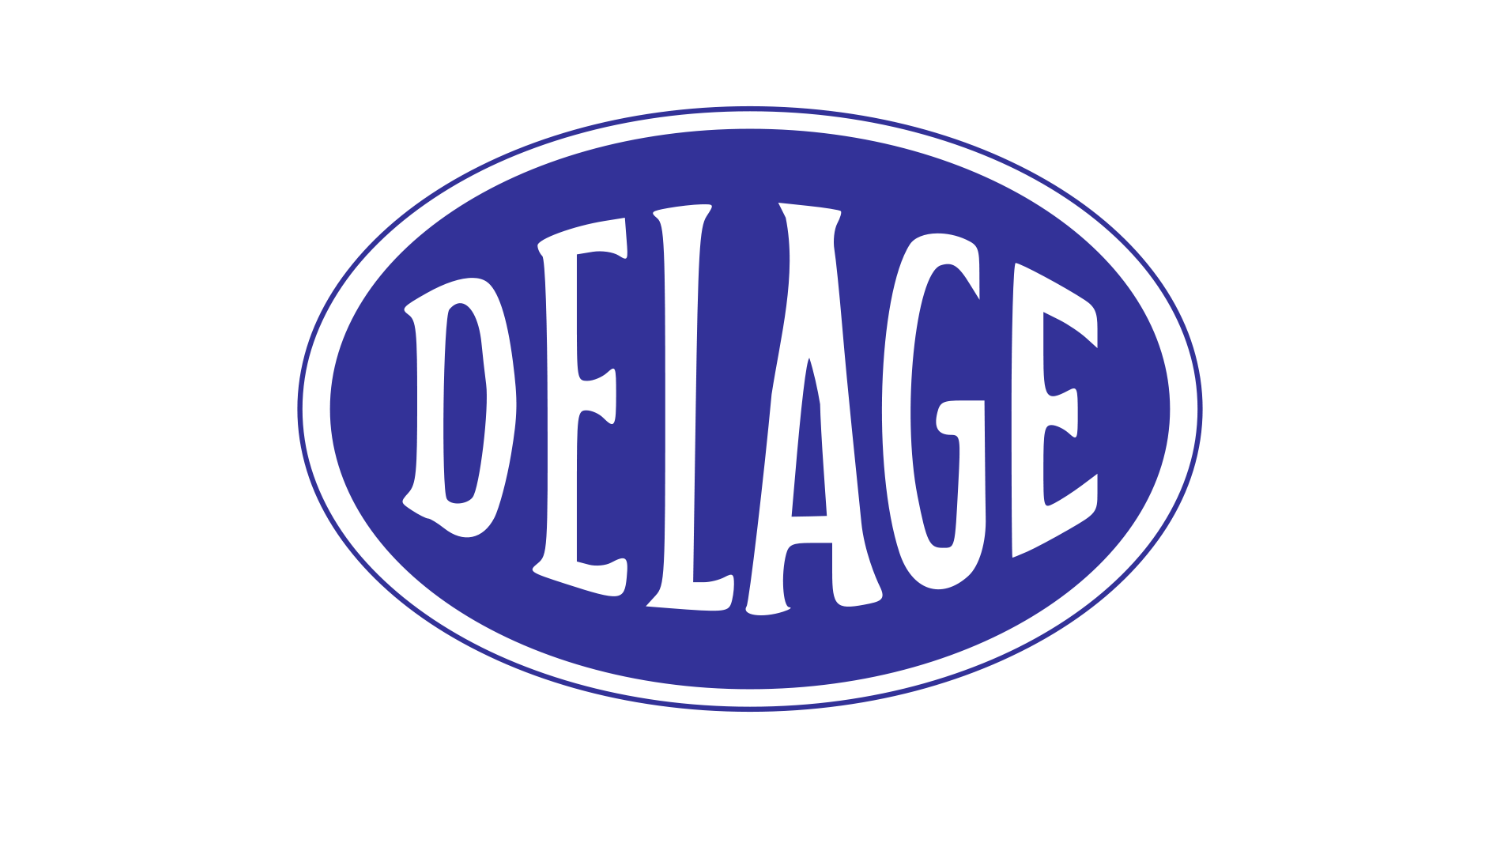 Delage